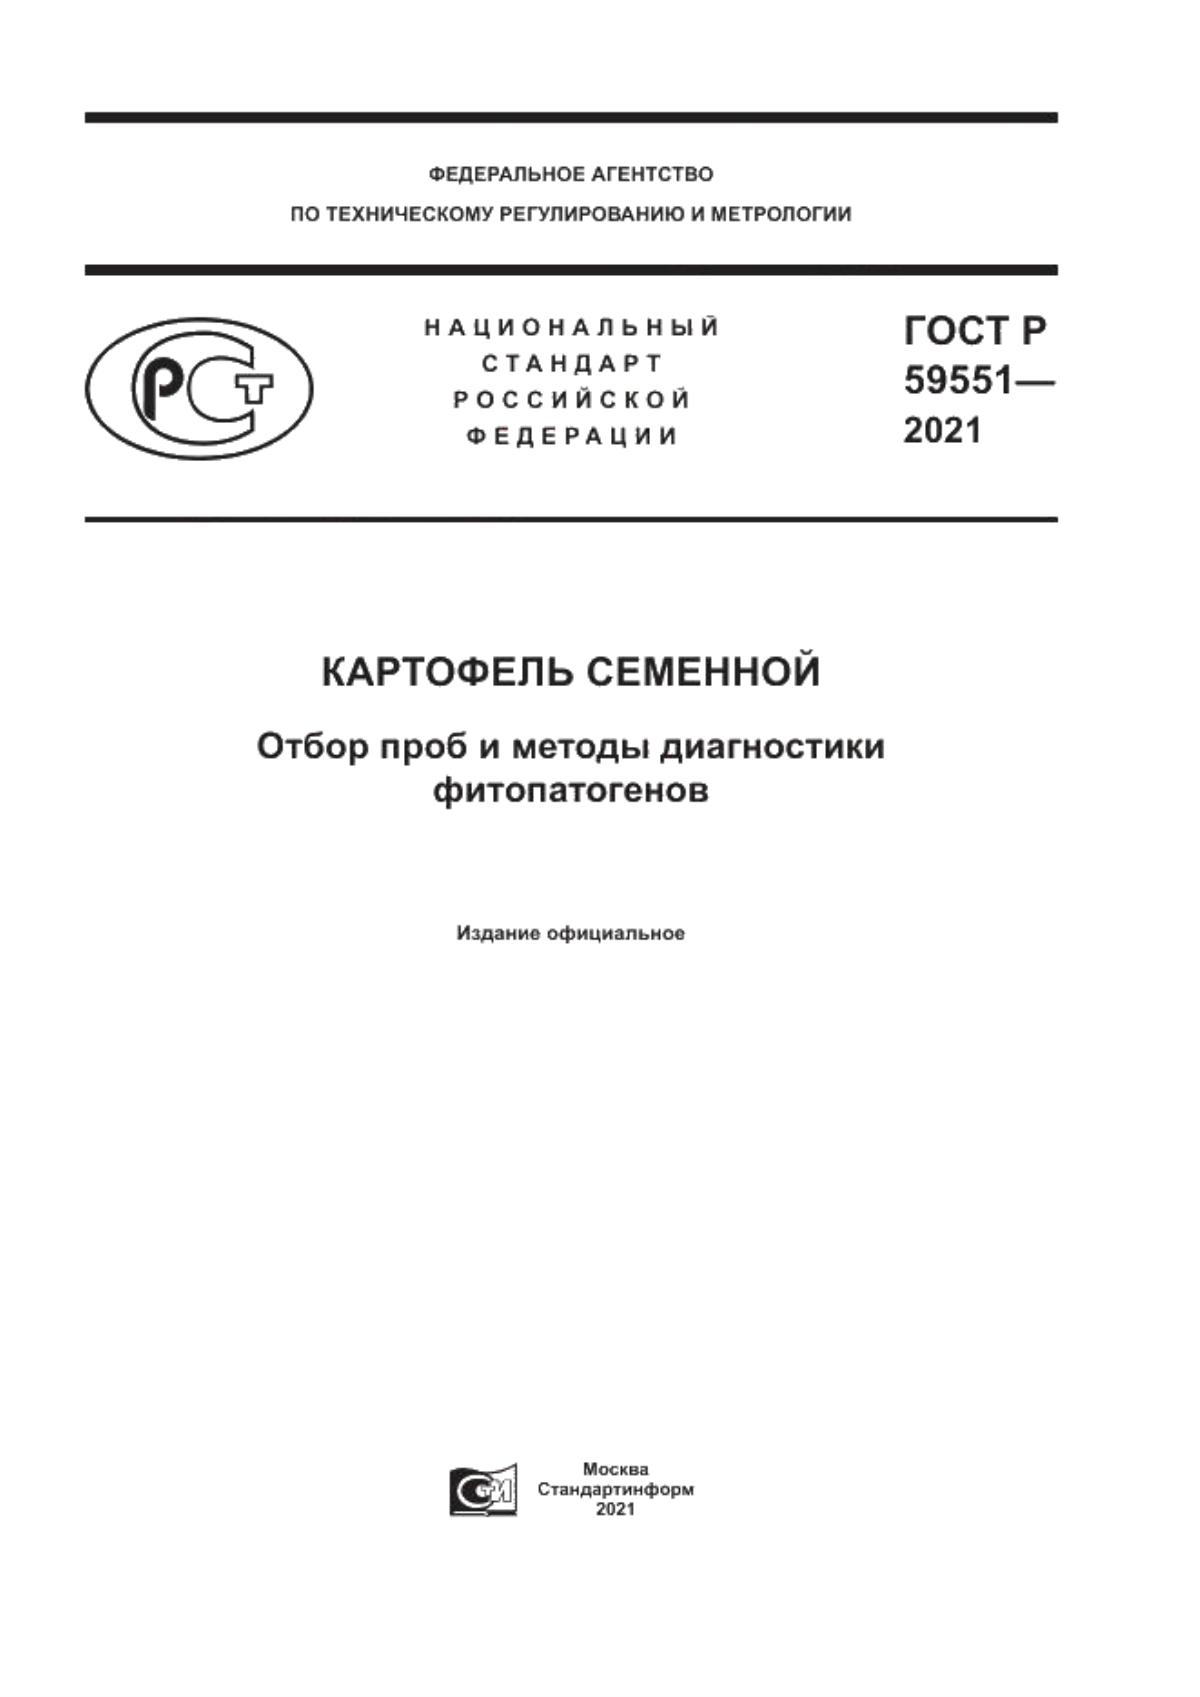 ГОСТ Р 59551-2021 Картофель семенной. Отбор проб и методы диагностики фитопатогенов